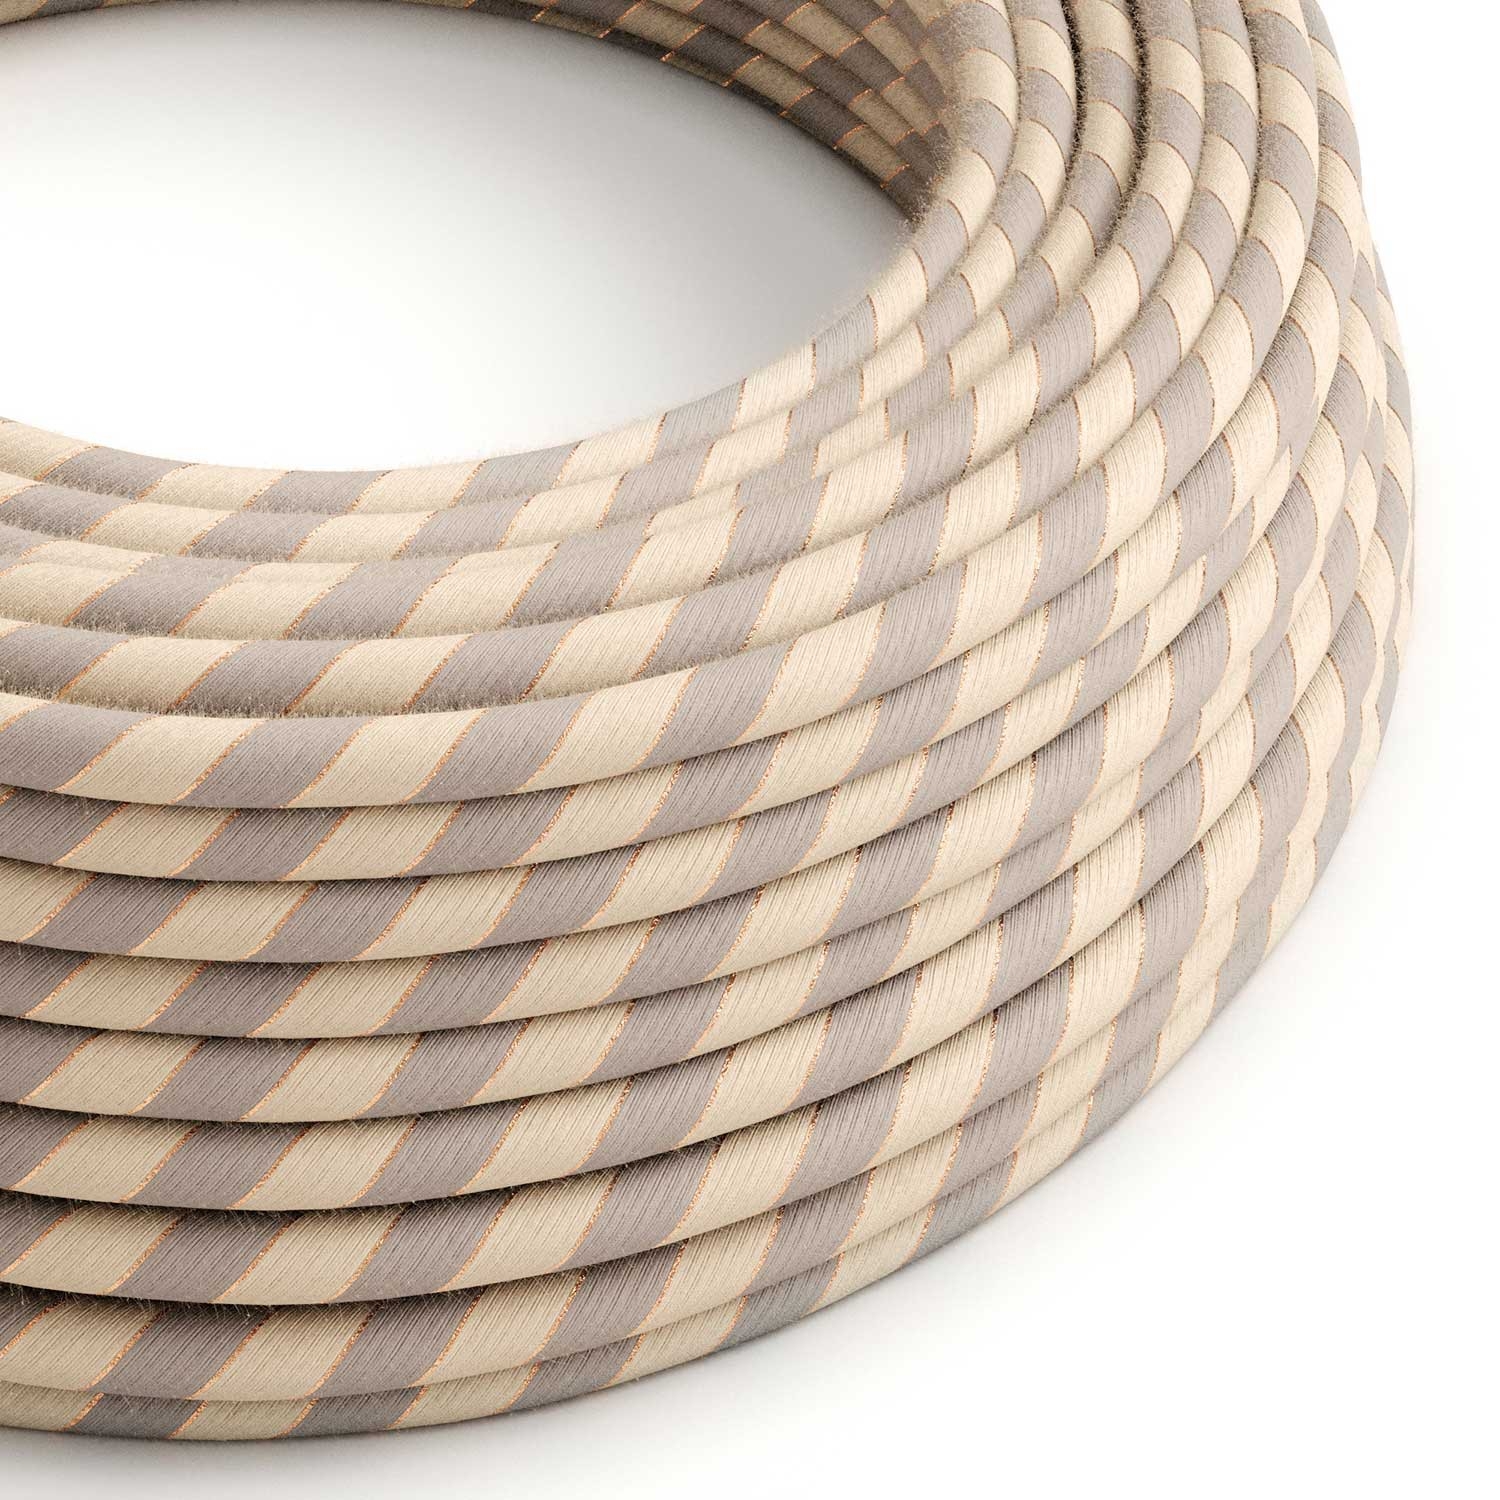 https://www.creative-cables.com.au/70839-big_default/err05-copper-thread-vertigo-cotton-and-linen-round-electrical-fabric-cloth-cord-cable.jpg